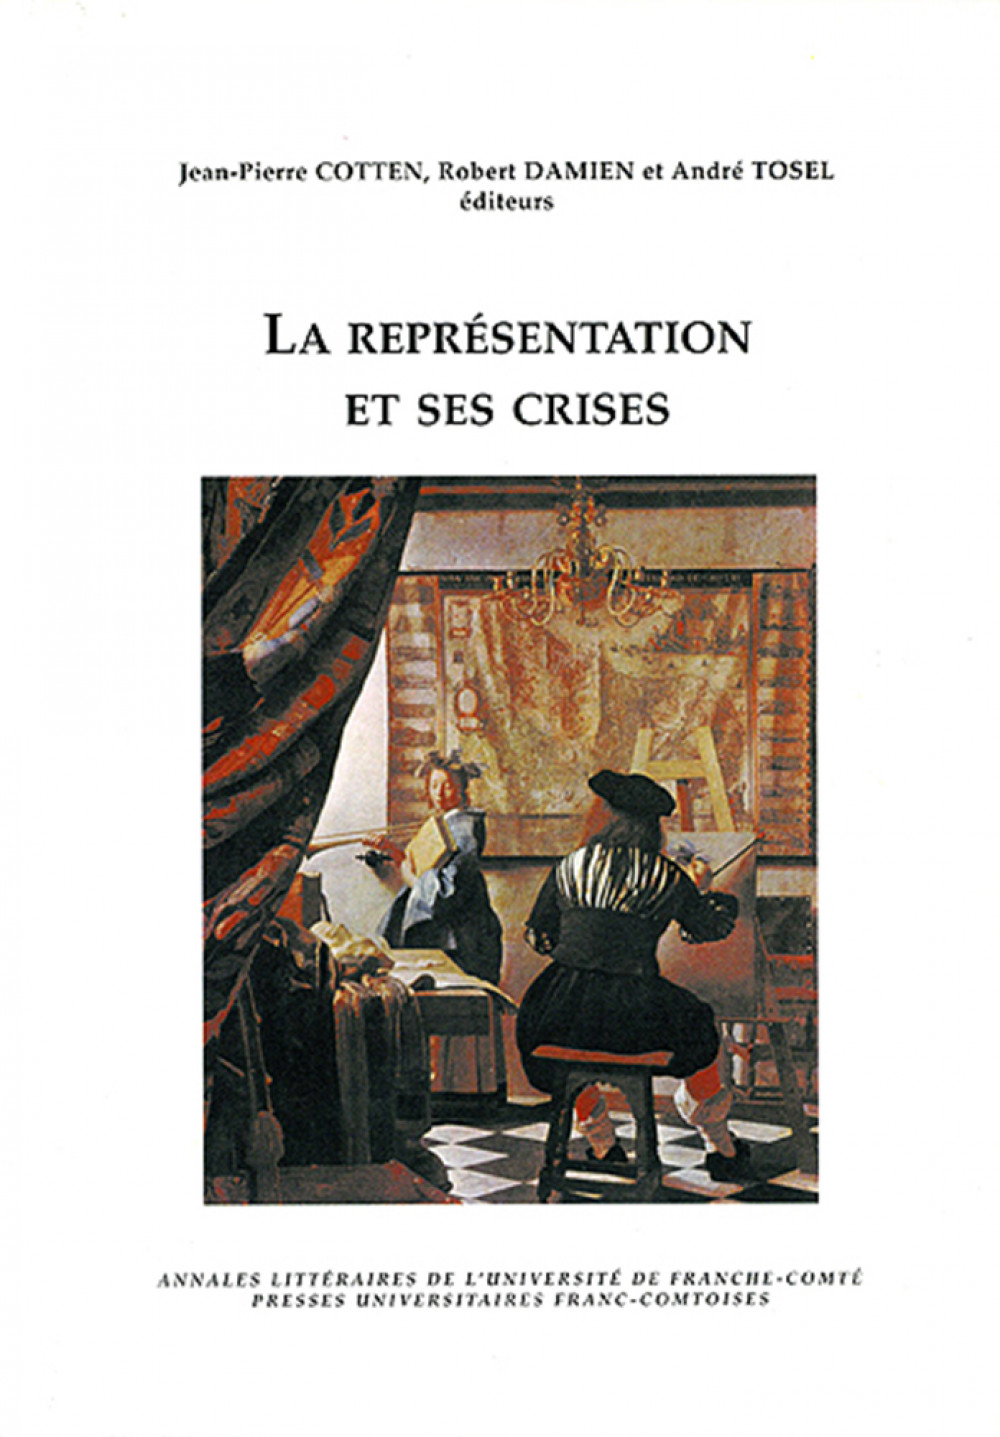 La représentation et ses crises